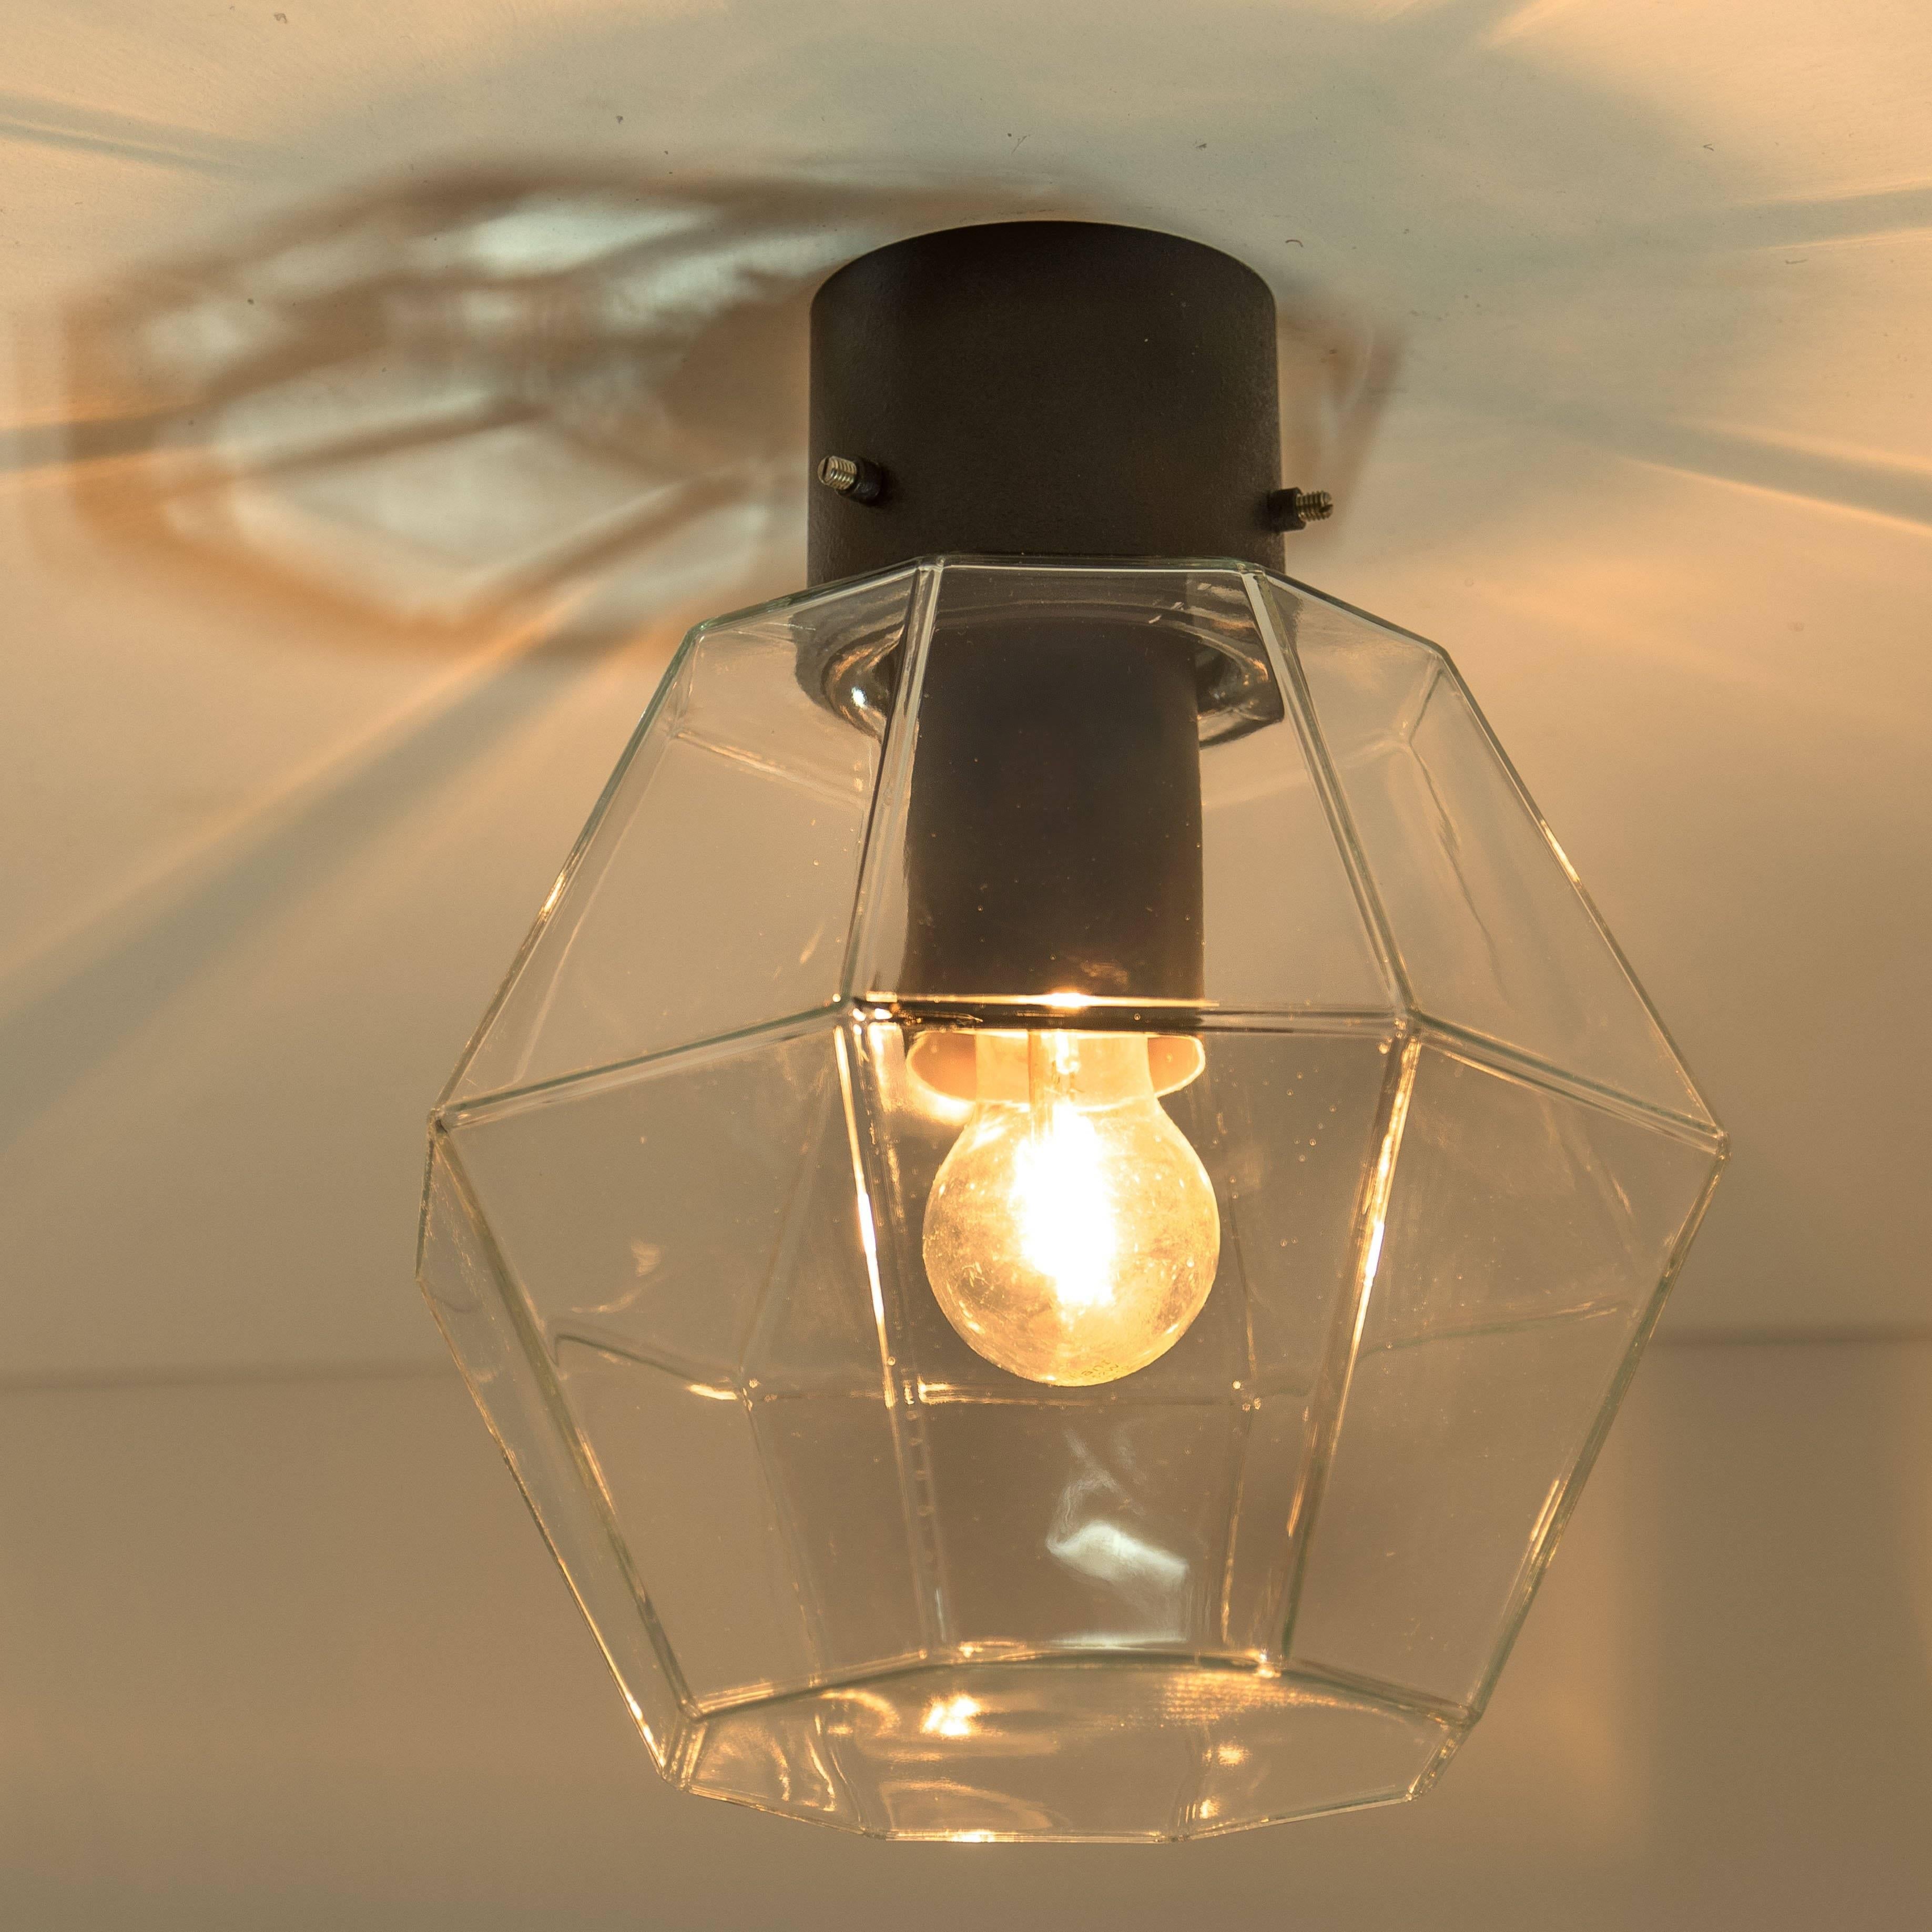 Eine der zehn minimalistischen Leuchten von Limburg Glashütte, 1965-1970. Schlichtes und zeitloses Design. Das geometrische, achteckige und facettenreiche Glas erzeugt schöne Variationen und Muster in Licht und Schatten.
Hochwertig und in sehr